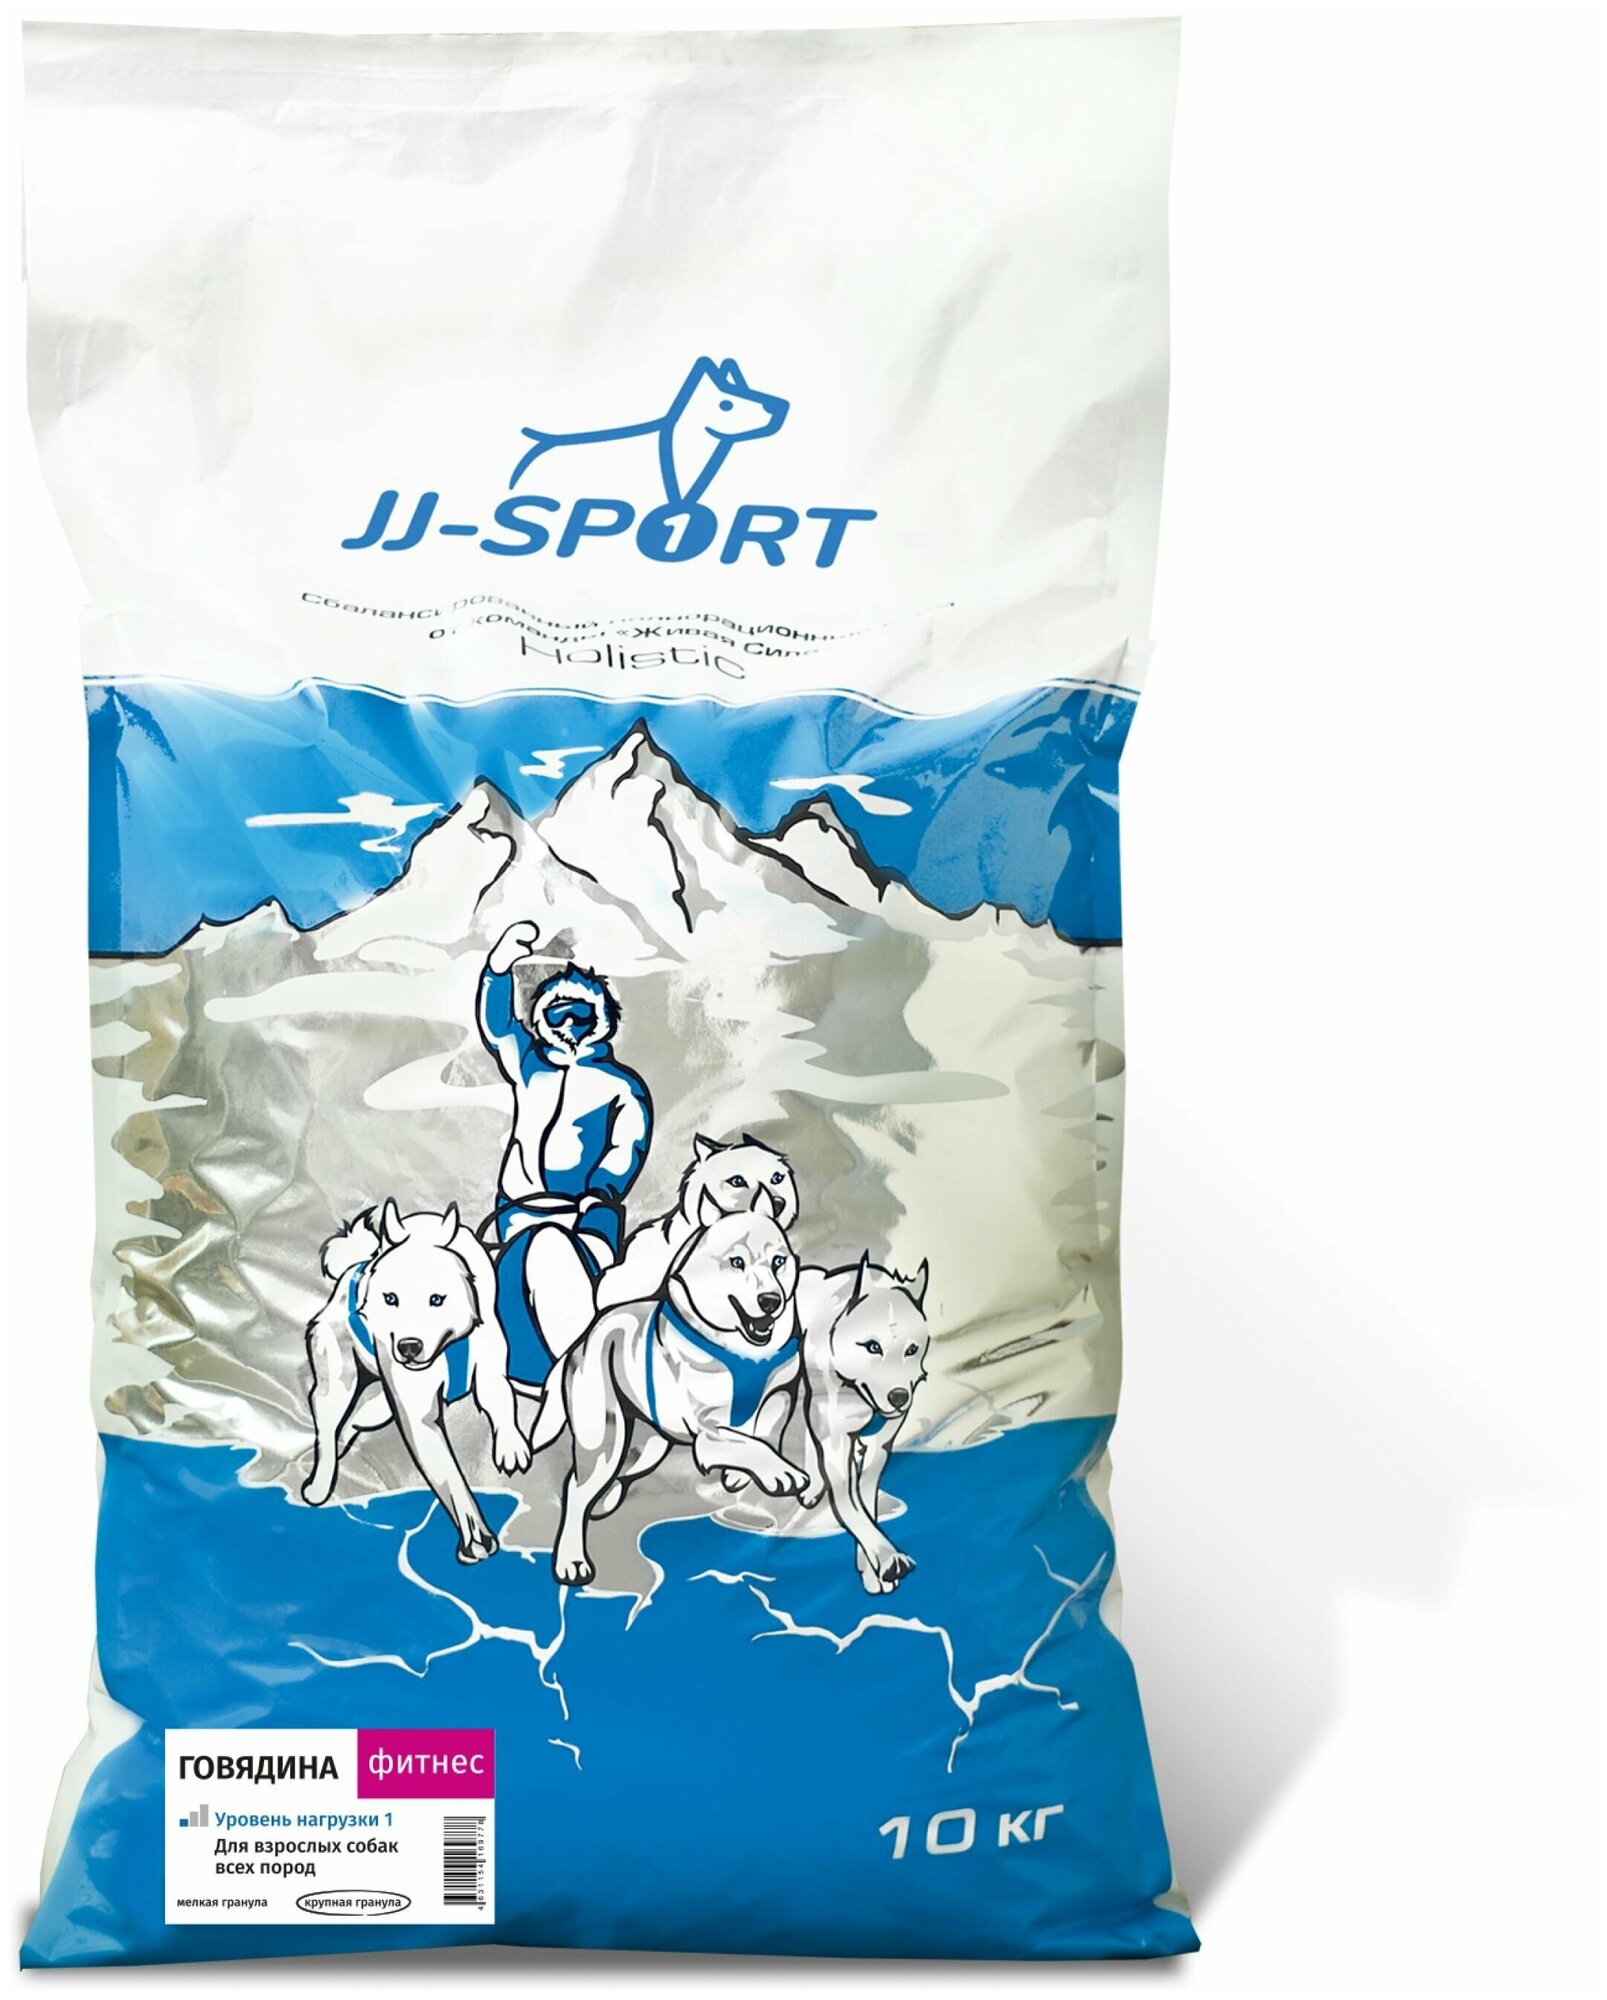 JJSPORT_ЖИВАЯ сила Фитнес корм для собак всех пород для хорошей физической формы с говядиной и сельдью, Крупная гранула (10 кг)